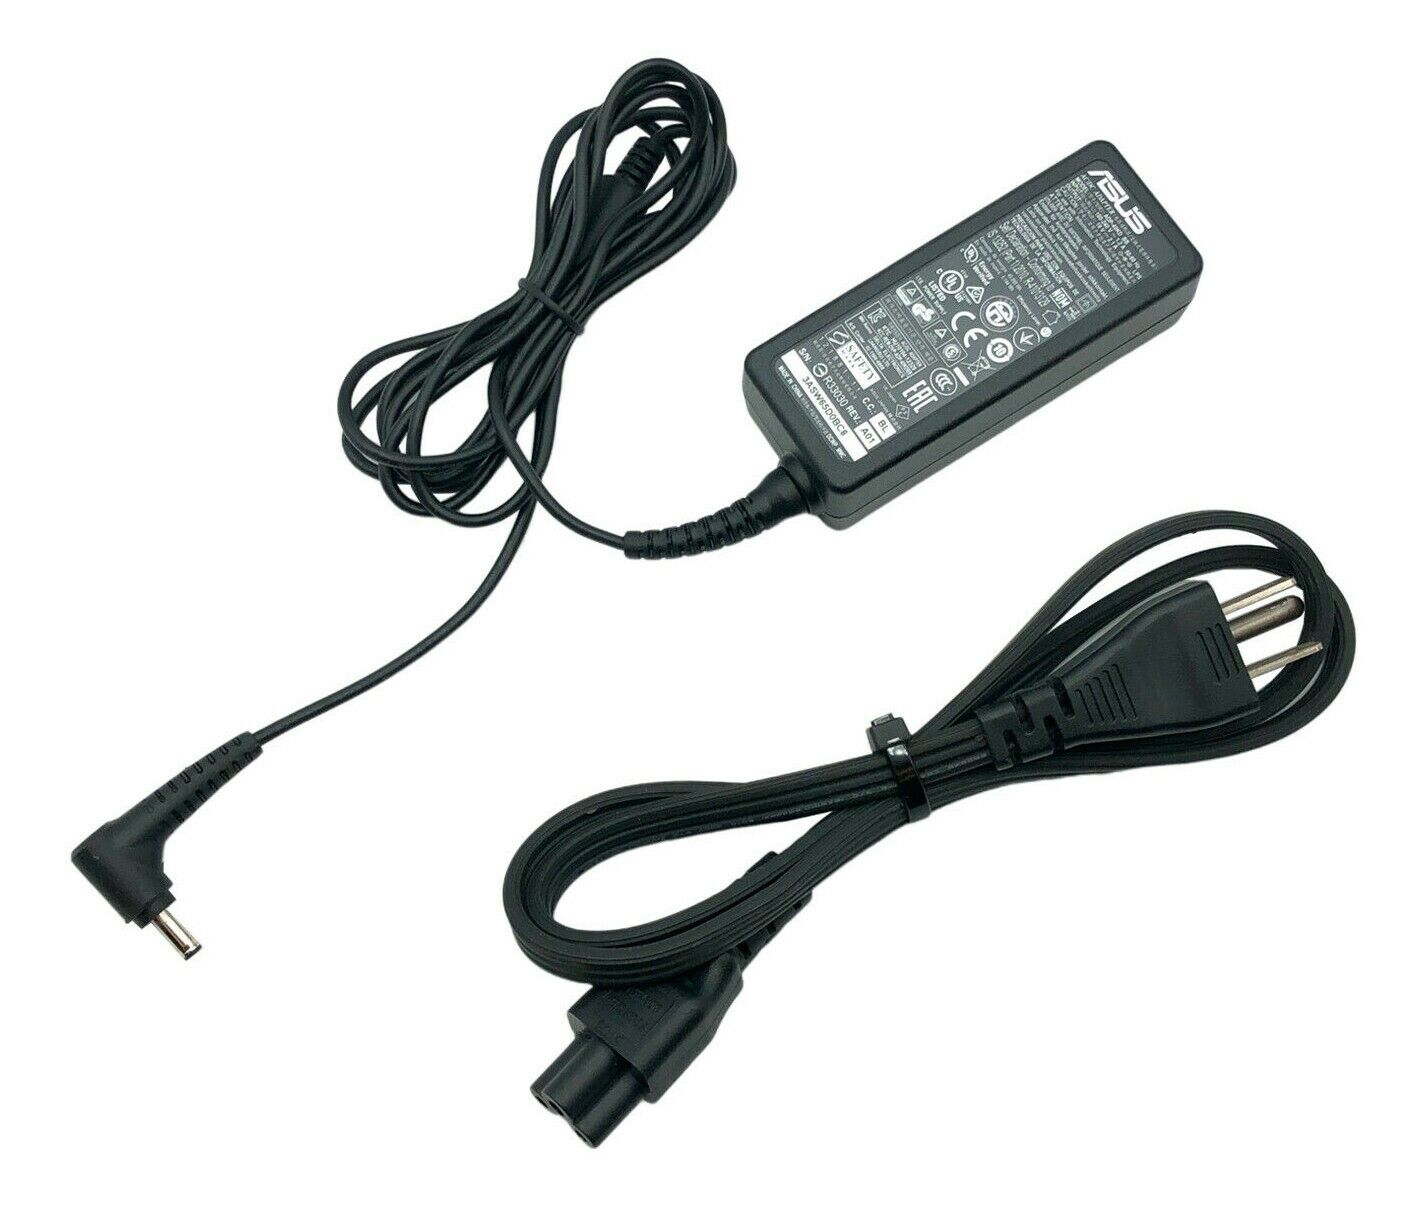 Genuine Asus AC Power Adapter for VivoBook E403 E403SA E403NA E403SA-US21 Laptop